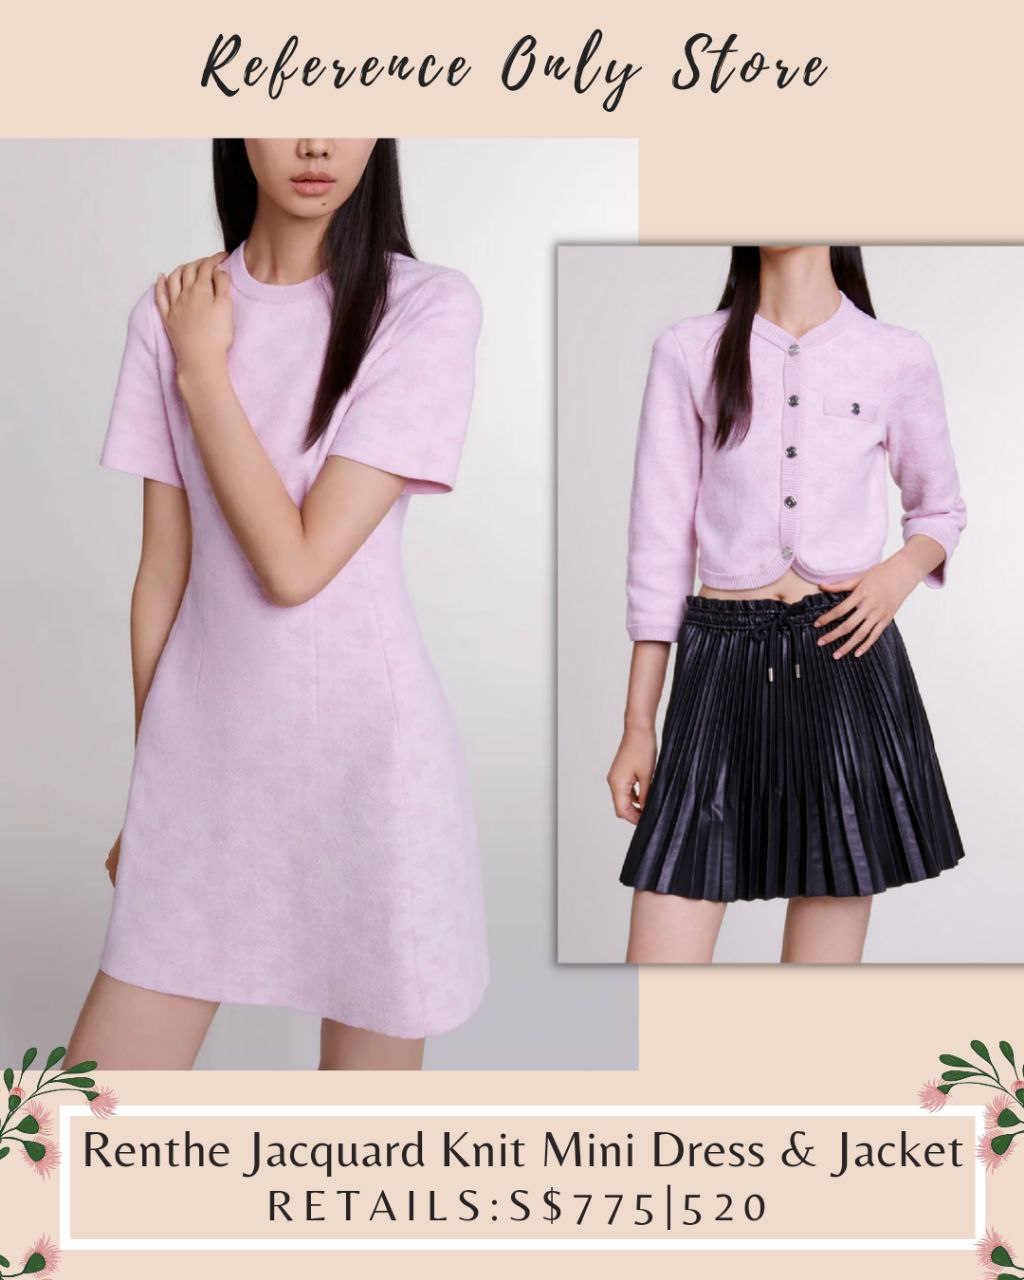 MJ Renthe Jacquard Knit Mini Dress & Jacket